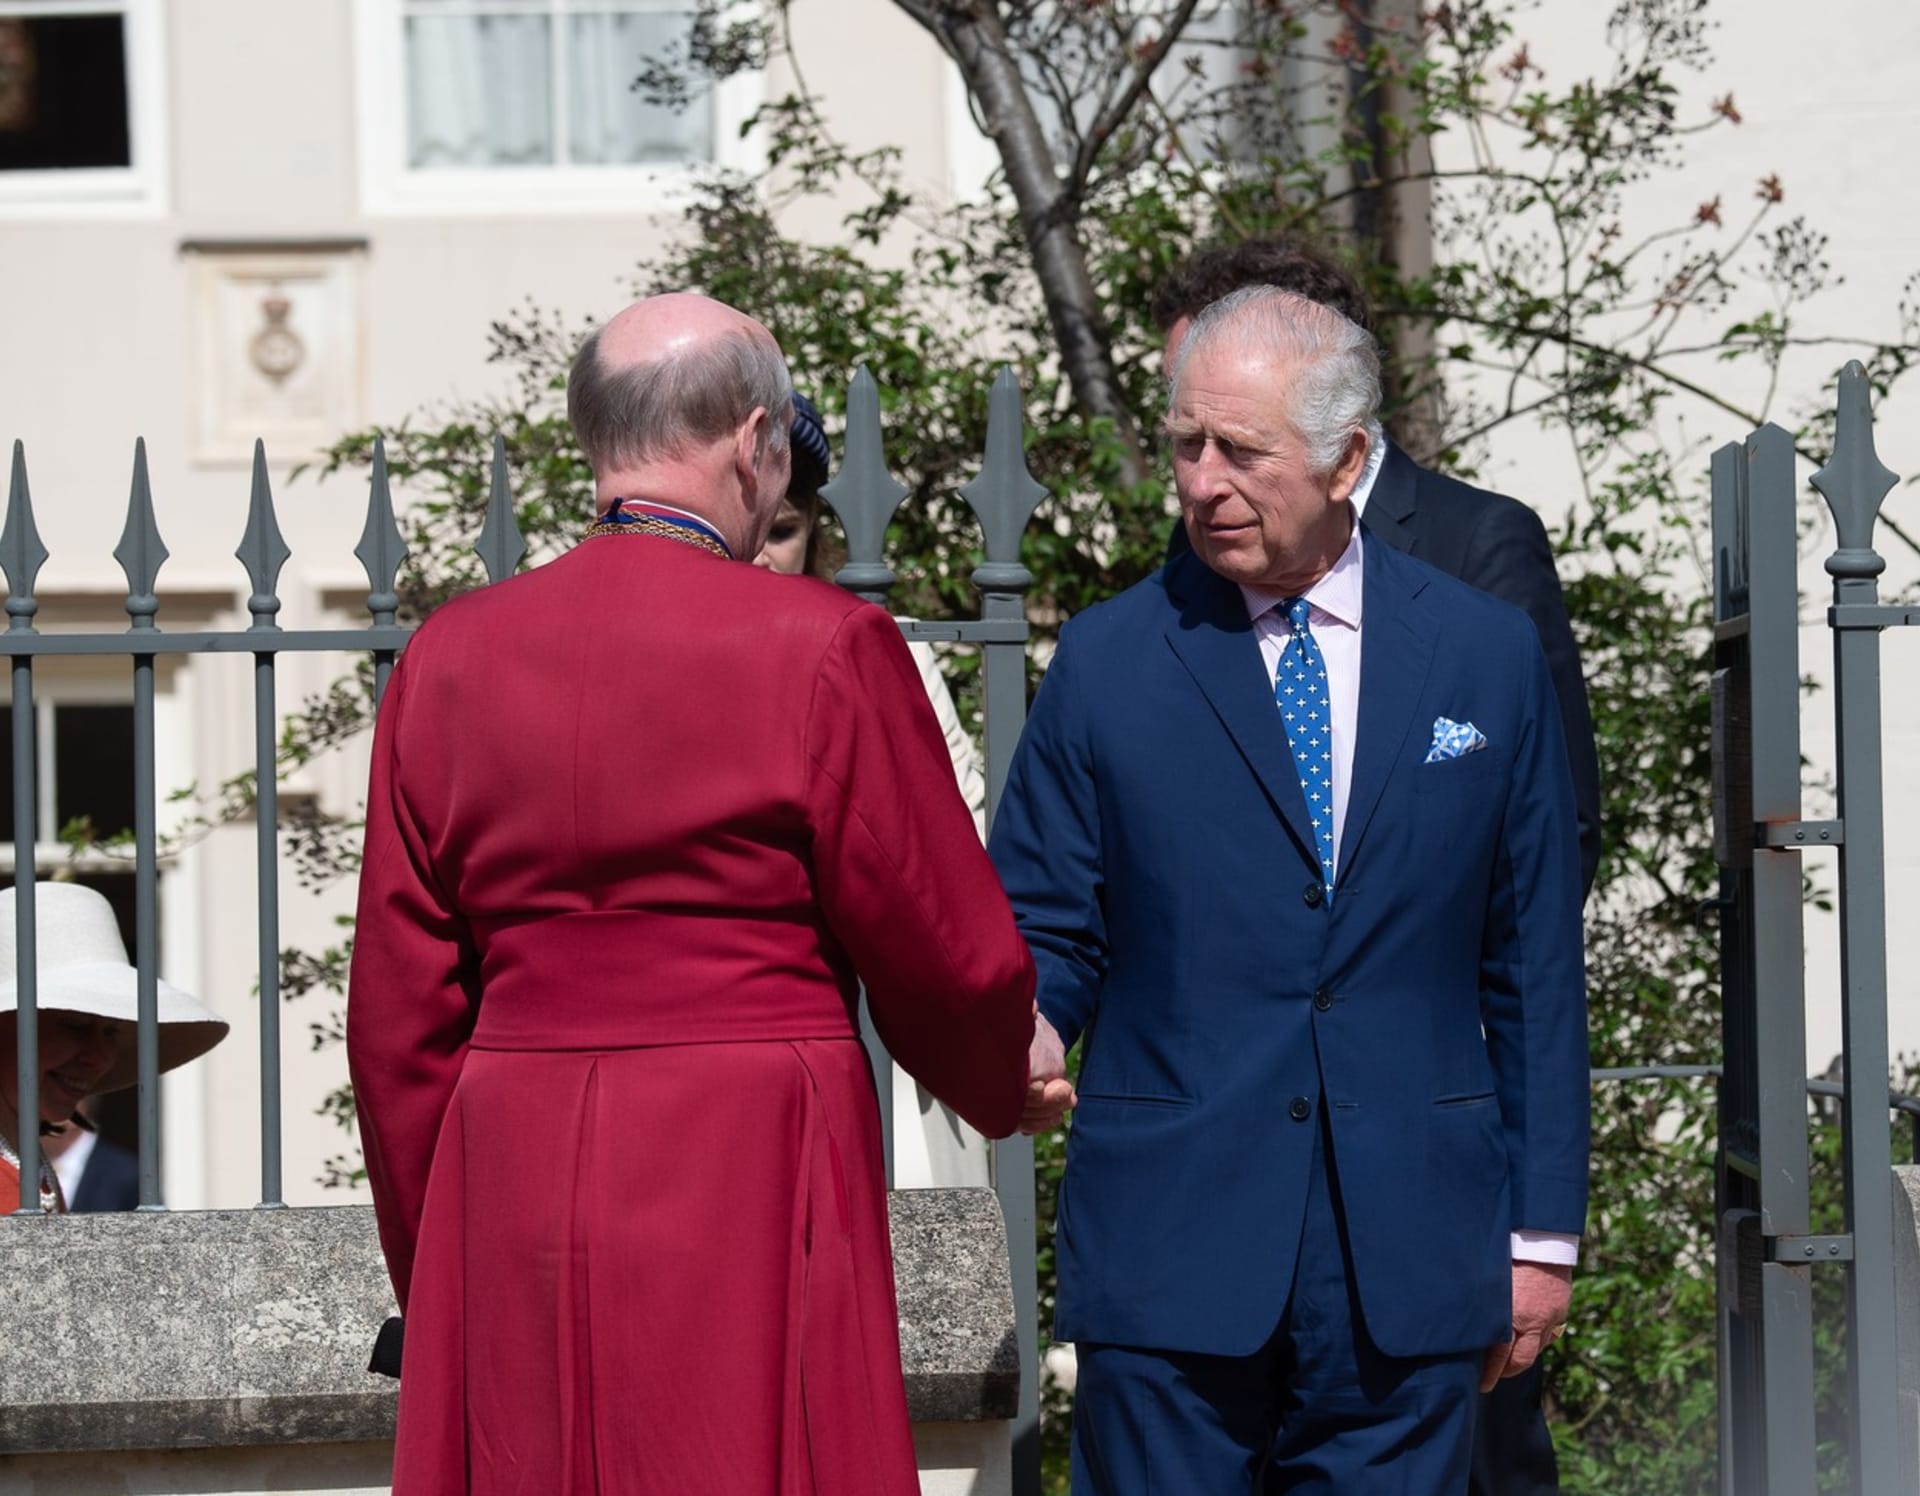 Velikonoční tradice dodržují i členové královské rodiny. Král Karel III., jeho choť Camilla a zbytek královské rodiny se společně účastnili tradiční velikonoční bohoslužby v kostele svatého Jiří ve Windsoru.